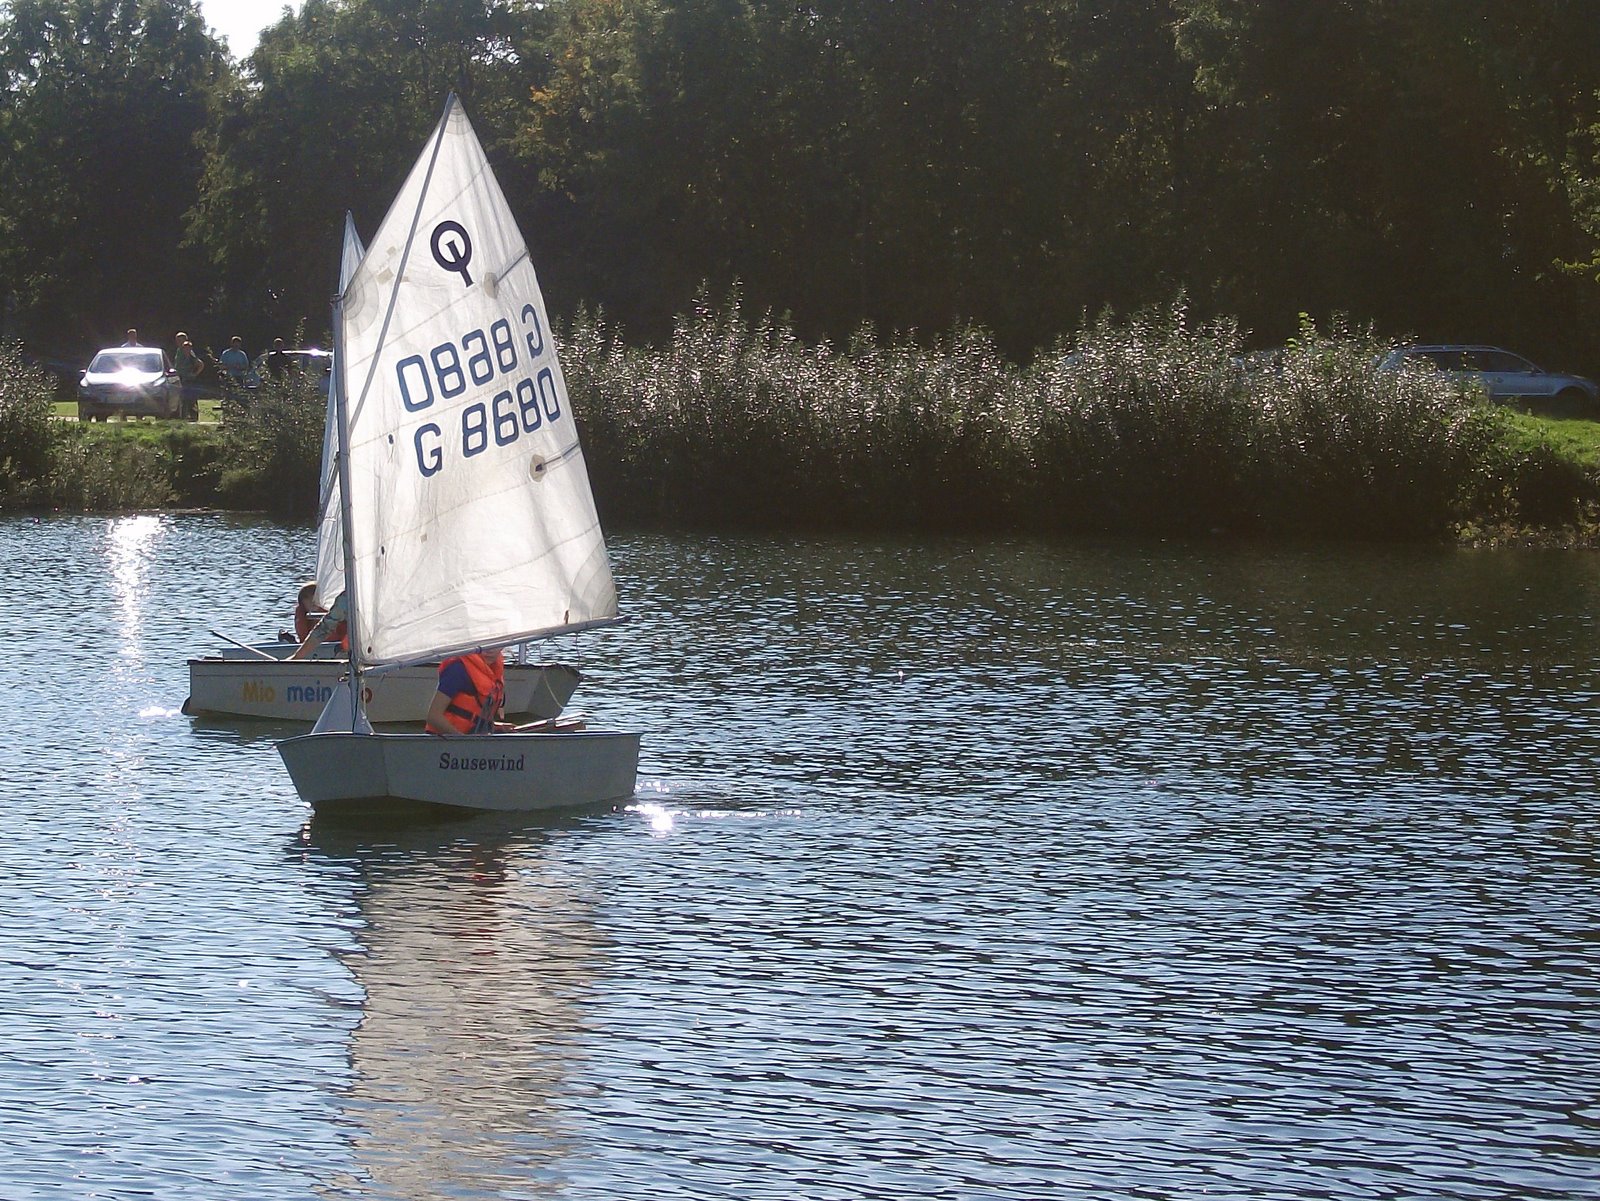 02.10 + 03.10.2010 – der RSC zu Gast beim Brachelener Boots Club (BBC) auf dem Kapbusch See